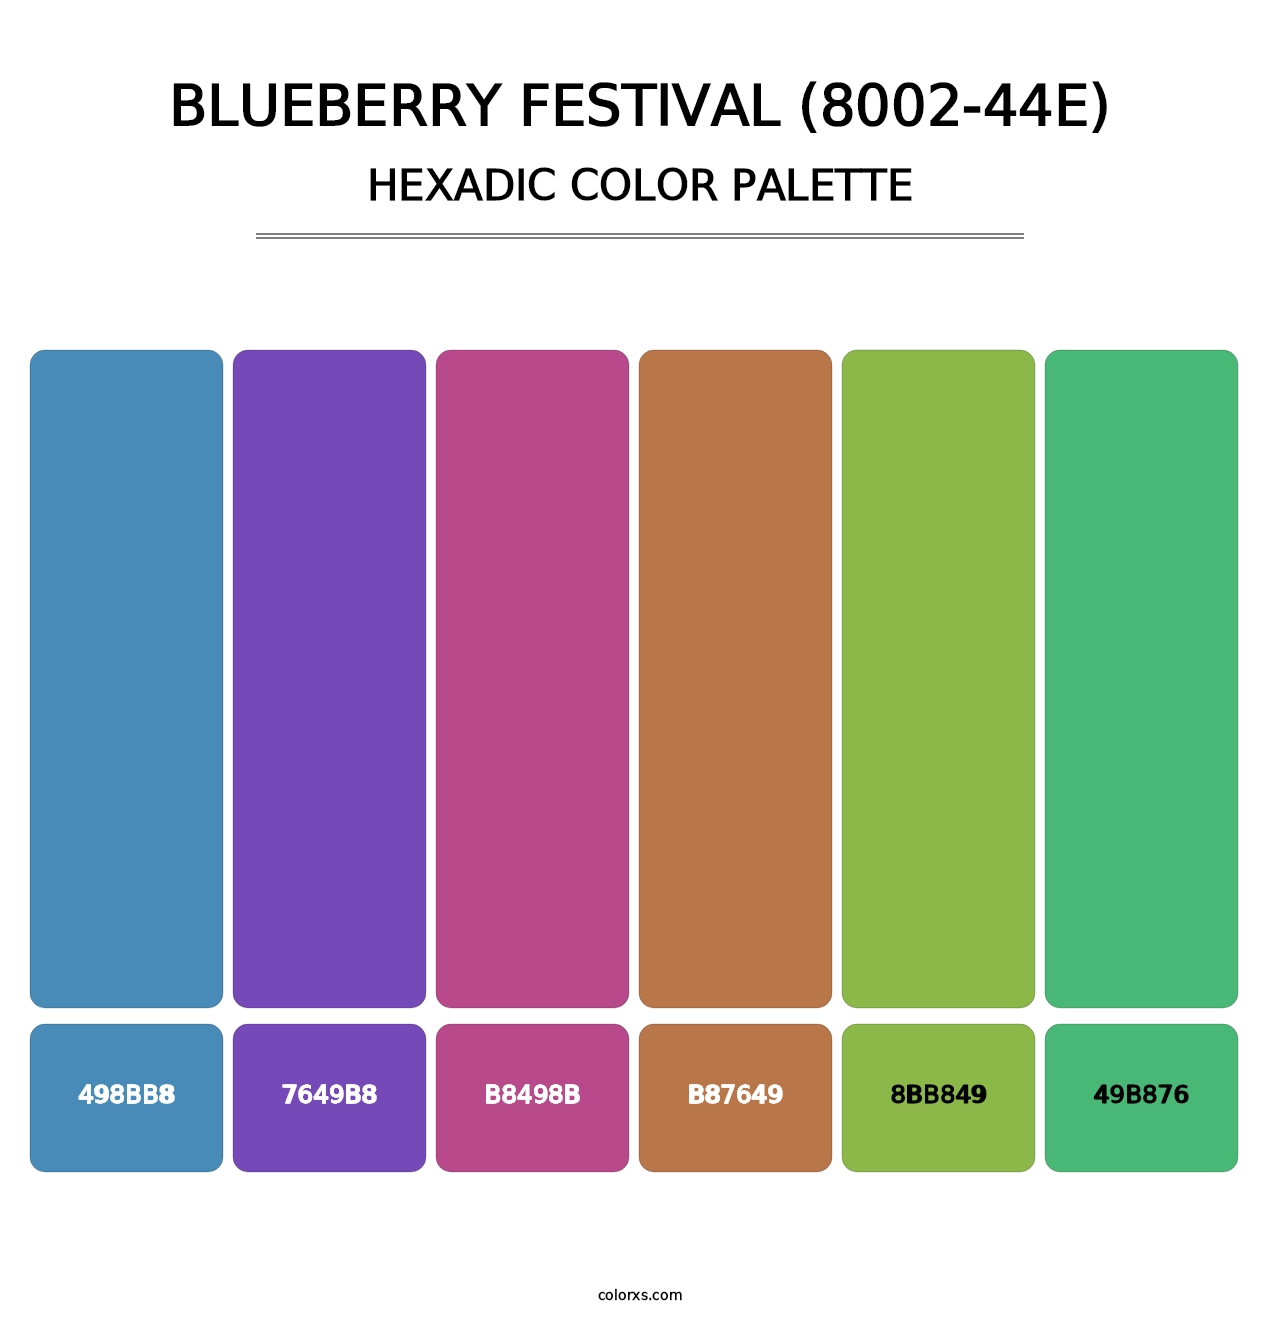 Blueberry Festival (8002-44E) - Hexadic Color Palette